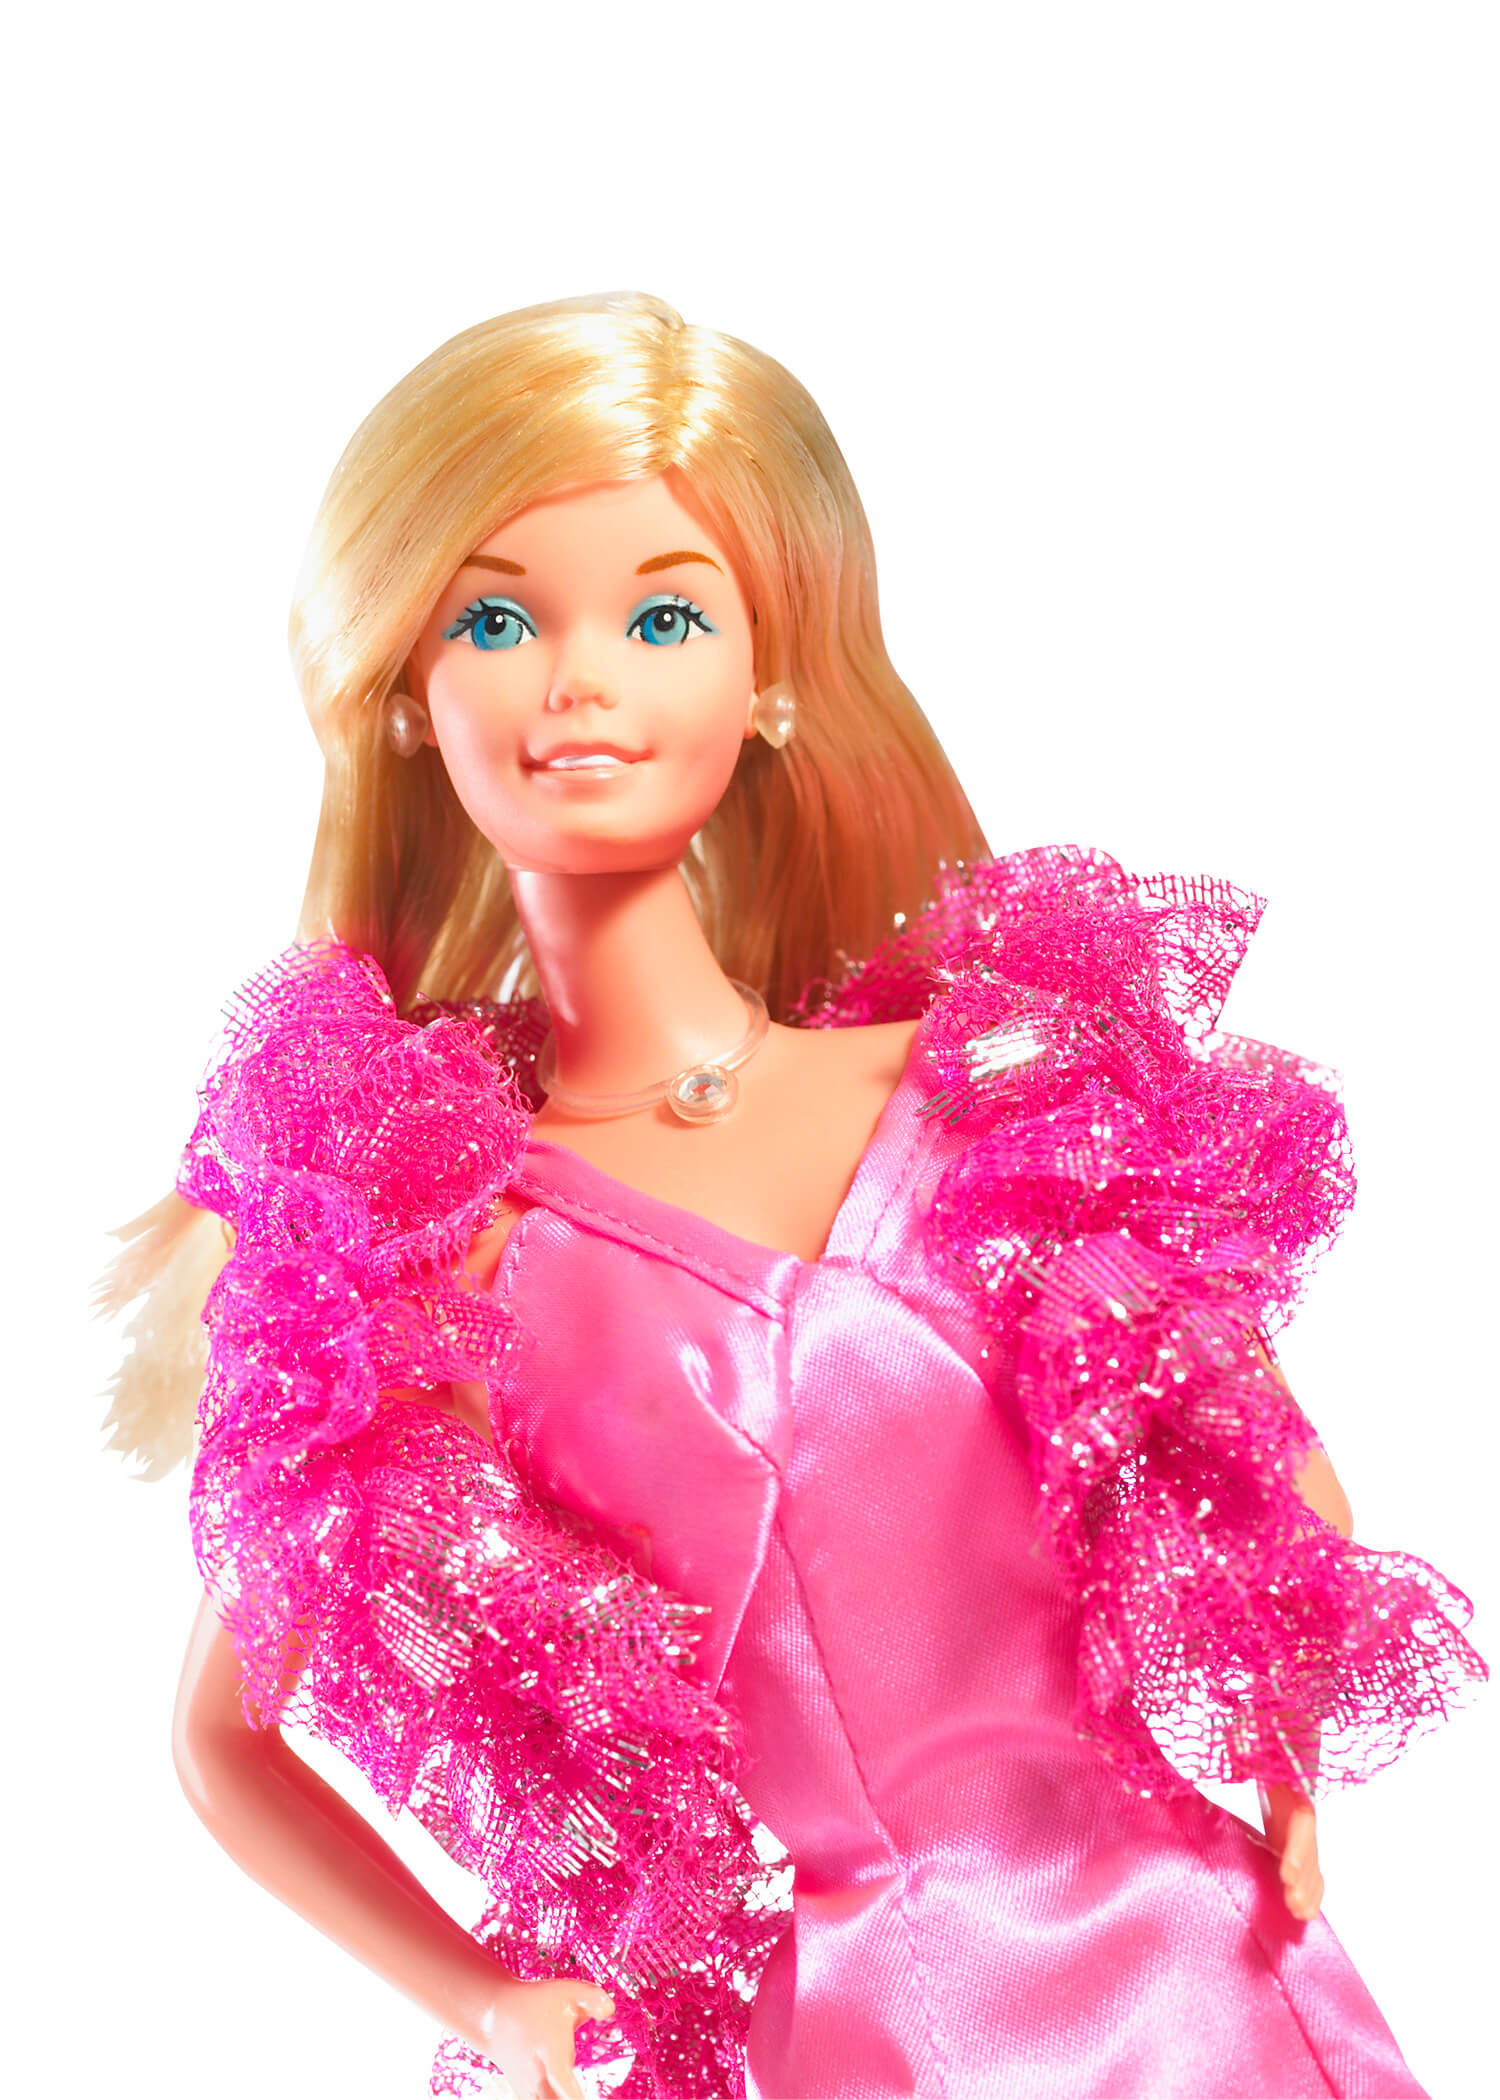 Barbie, modello Superstar, 1977 © Mattel Inc. Barbie Superstar creata nel 1977 è la quintessenza dell’icona americana. Lo scultore Joyce Clark definisce i nuovi tratti somatici della bambola ispirandosi all’attrice americana Farrah Fawcett, protagonista del serial televisivo Charlie’s Angels. Barbie appare avvolta in un luccicante abito in satin rosa shocking, con un boa di lamè, sorretta da un piedistallo a forma di stella, pronta a scendere in pista e a ballare al ritmo della Disco Music